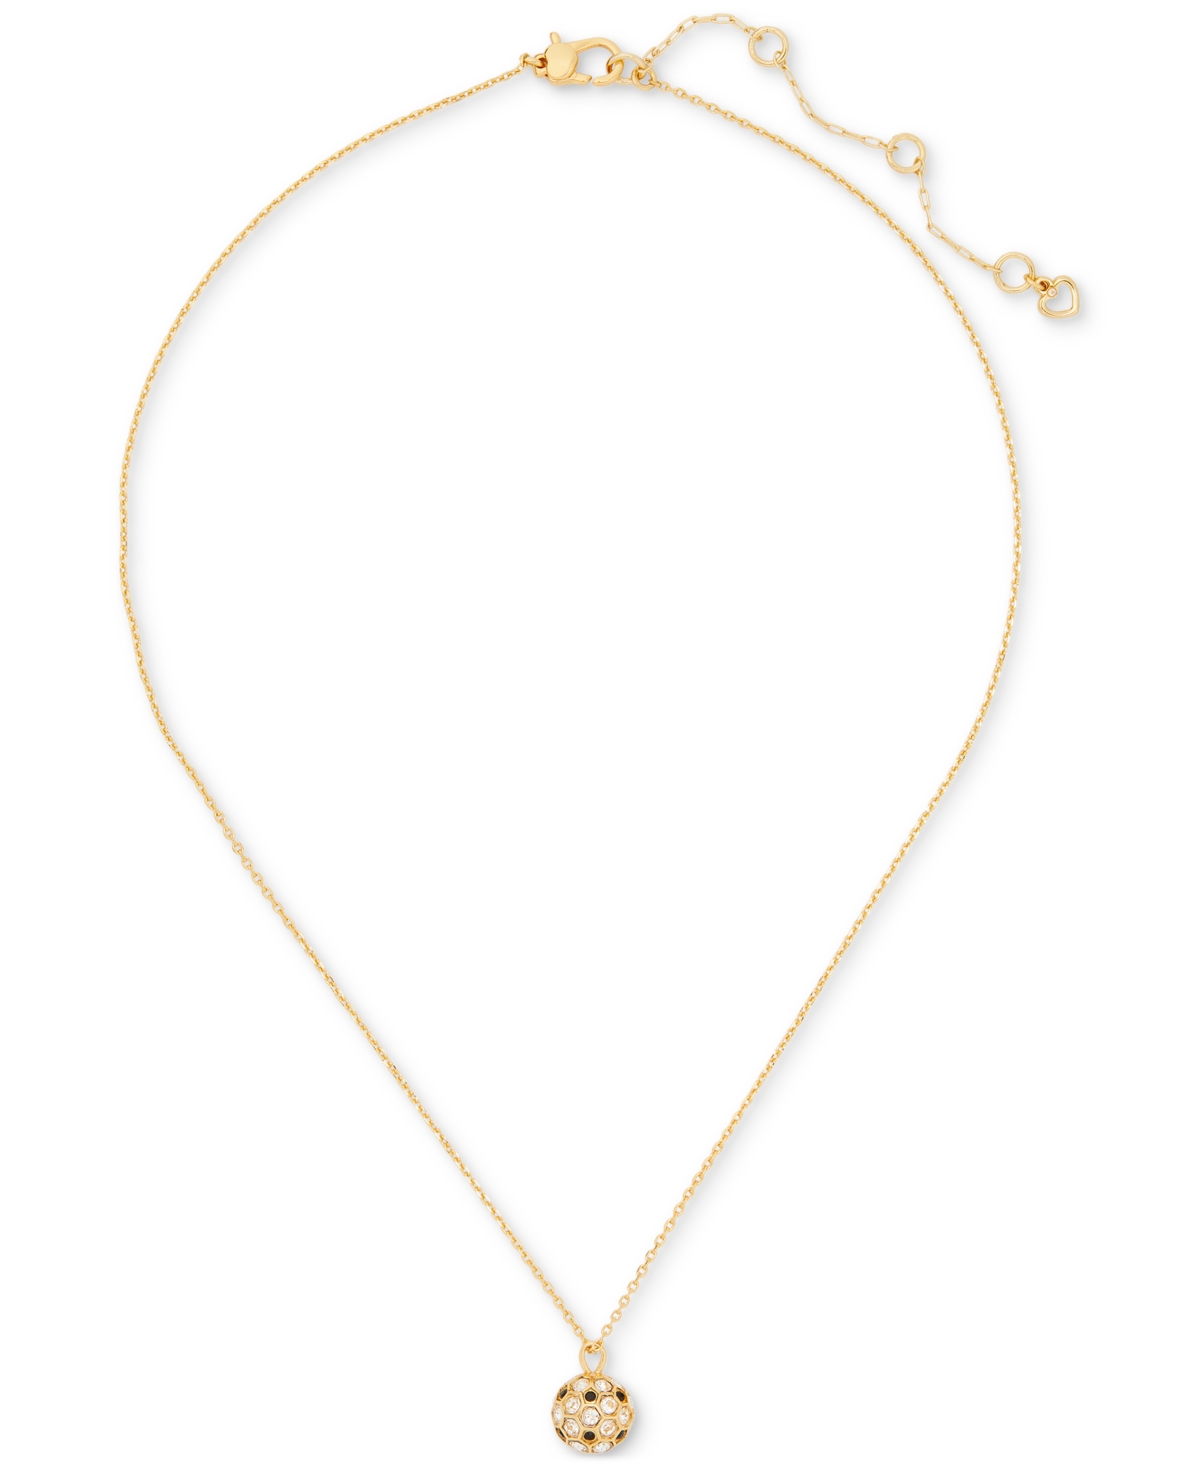 Gold-Tone Stone Orb Mini Pendant Necklace, 16" + 3" extender - Multi